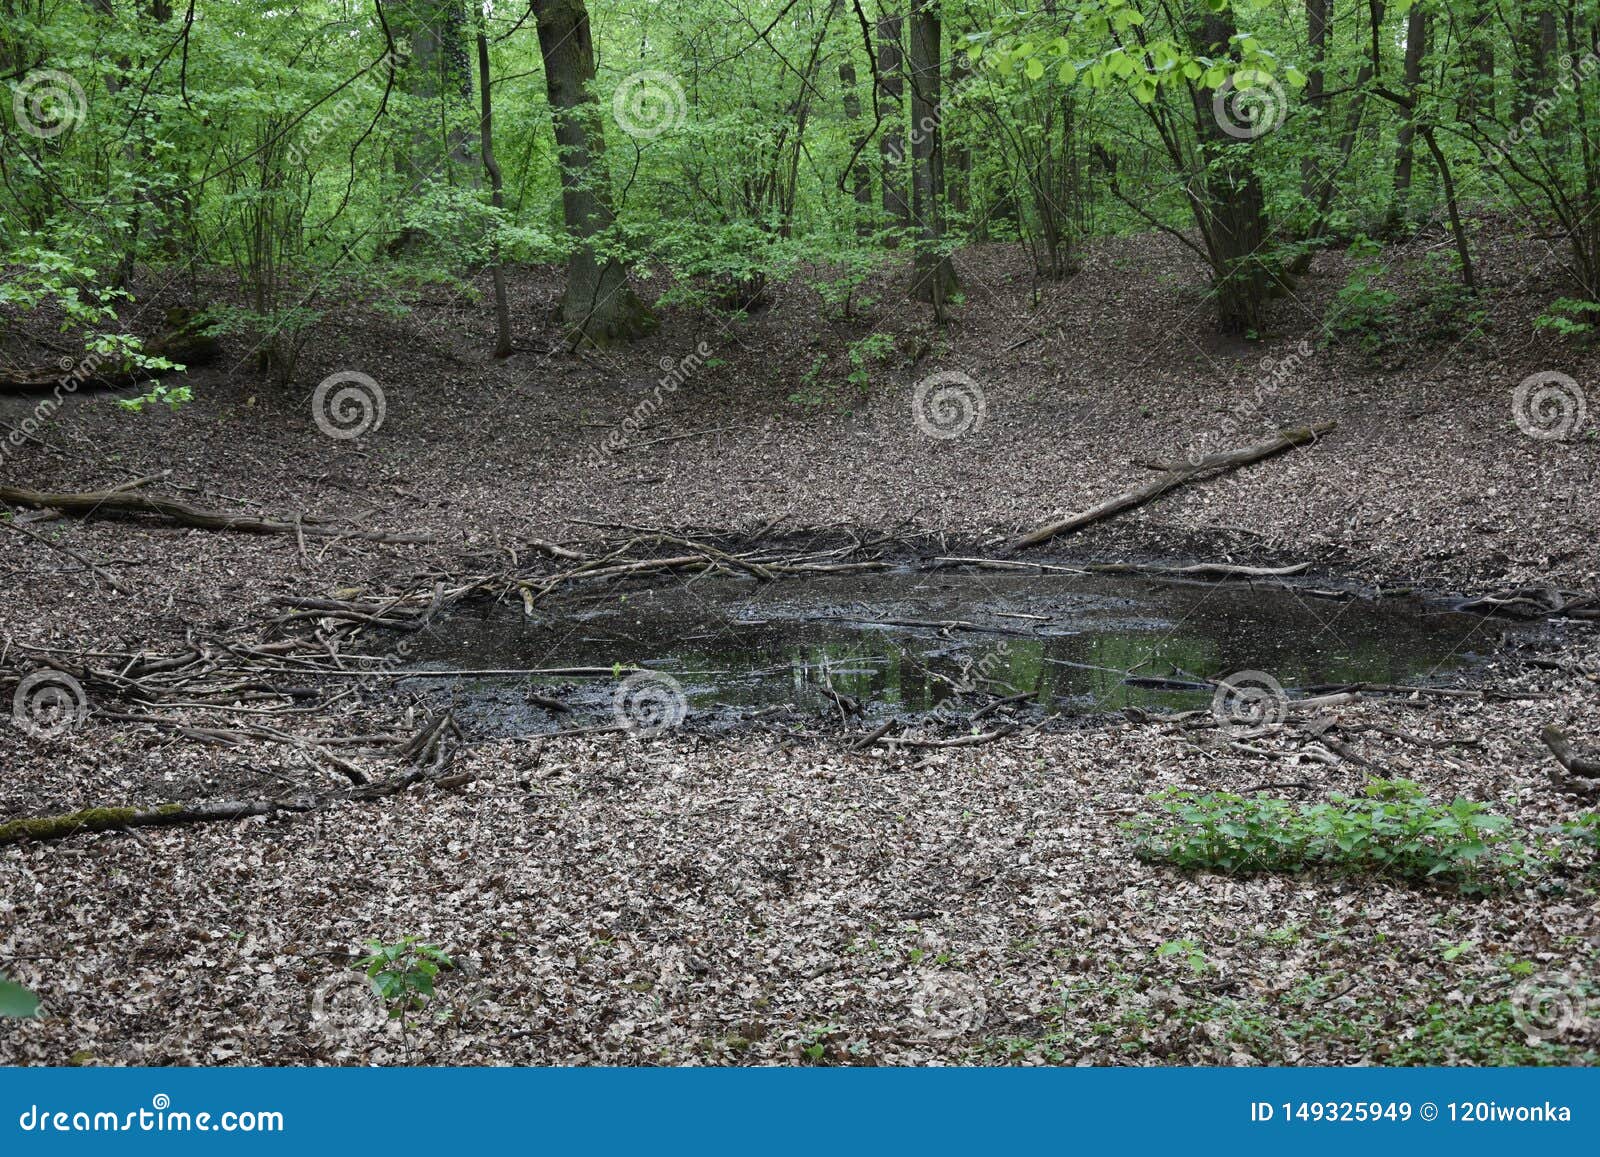 bånd lilla Betjening mulig The Morasko Meteorite Nature Reserve, Europe Stock Image - Image of forest,  landscape: 149325949